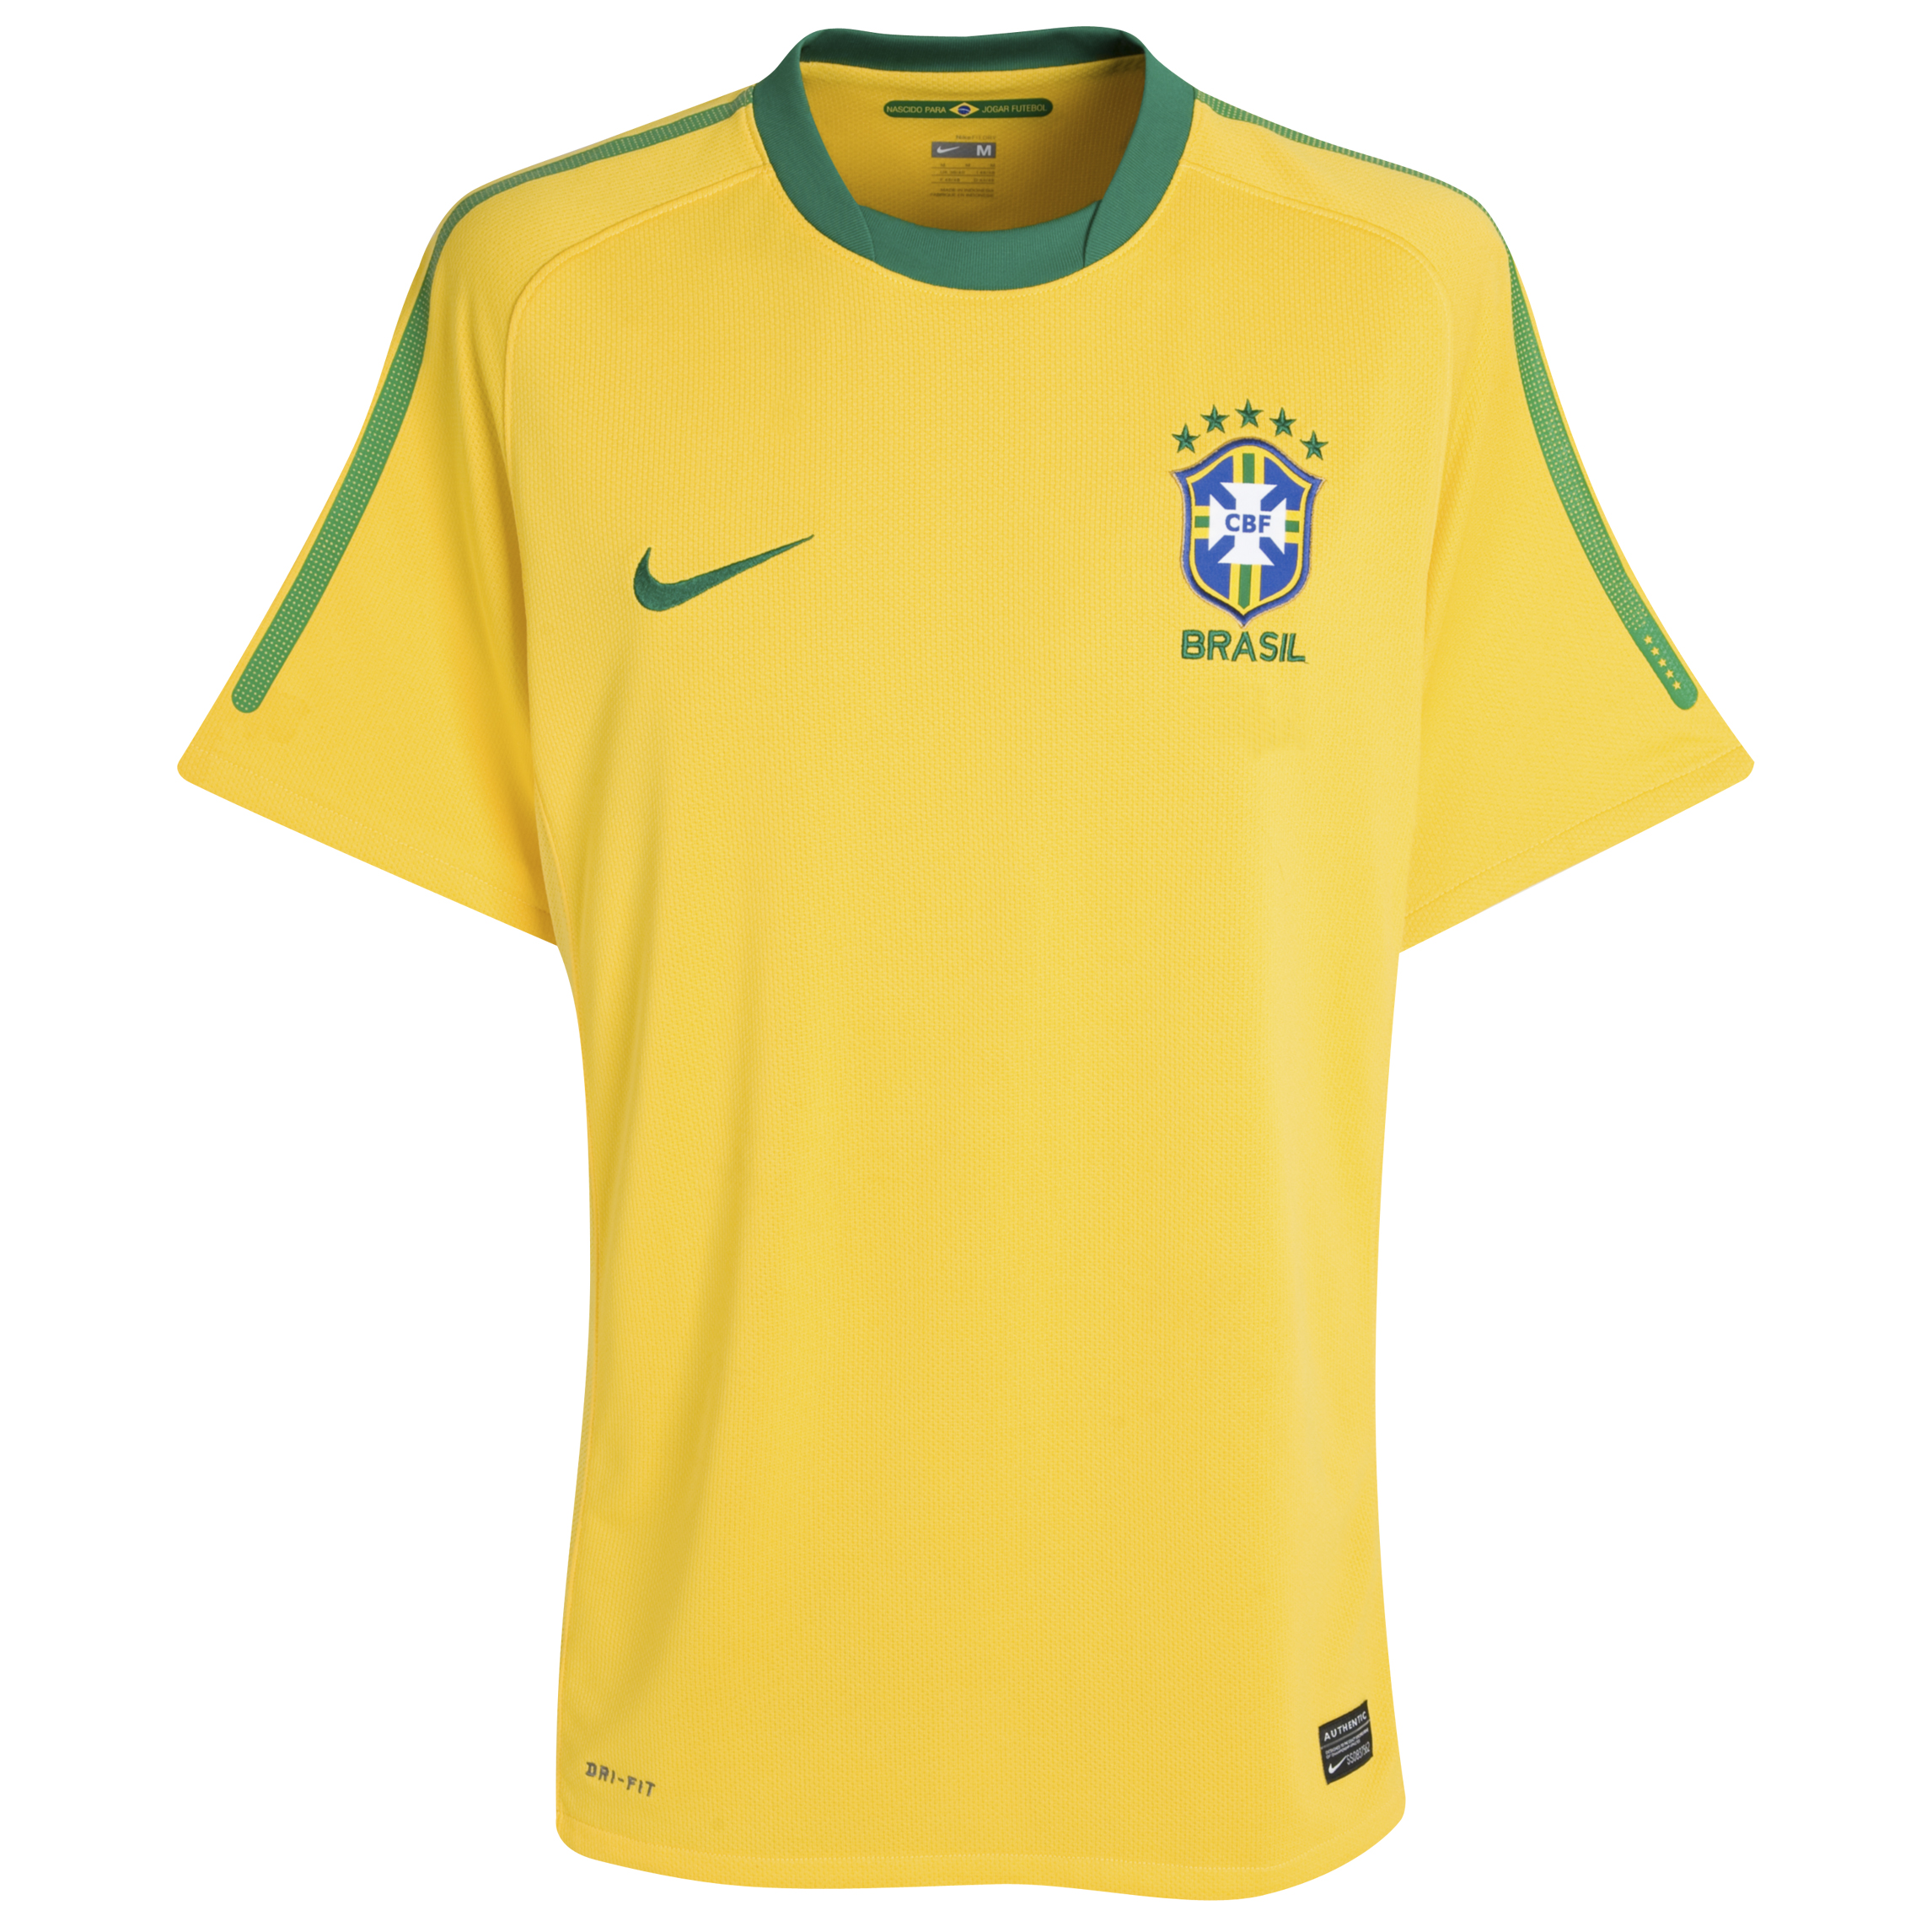 الملابس النهائيه لكأس العالم (2010)بجنوب افريقيا Kb-65865